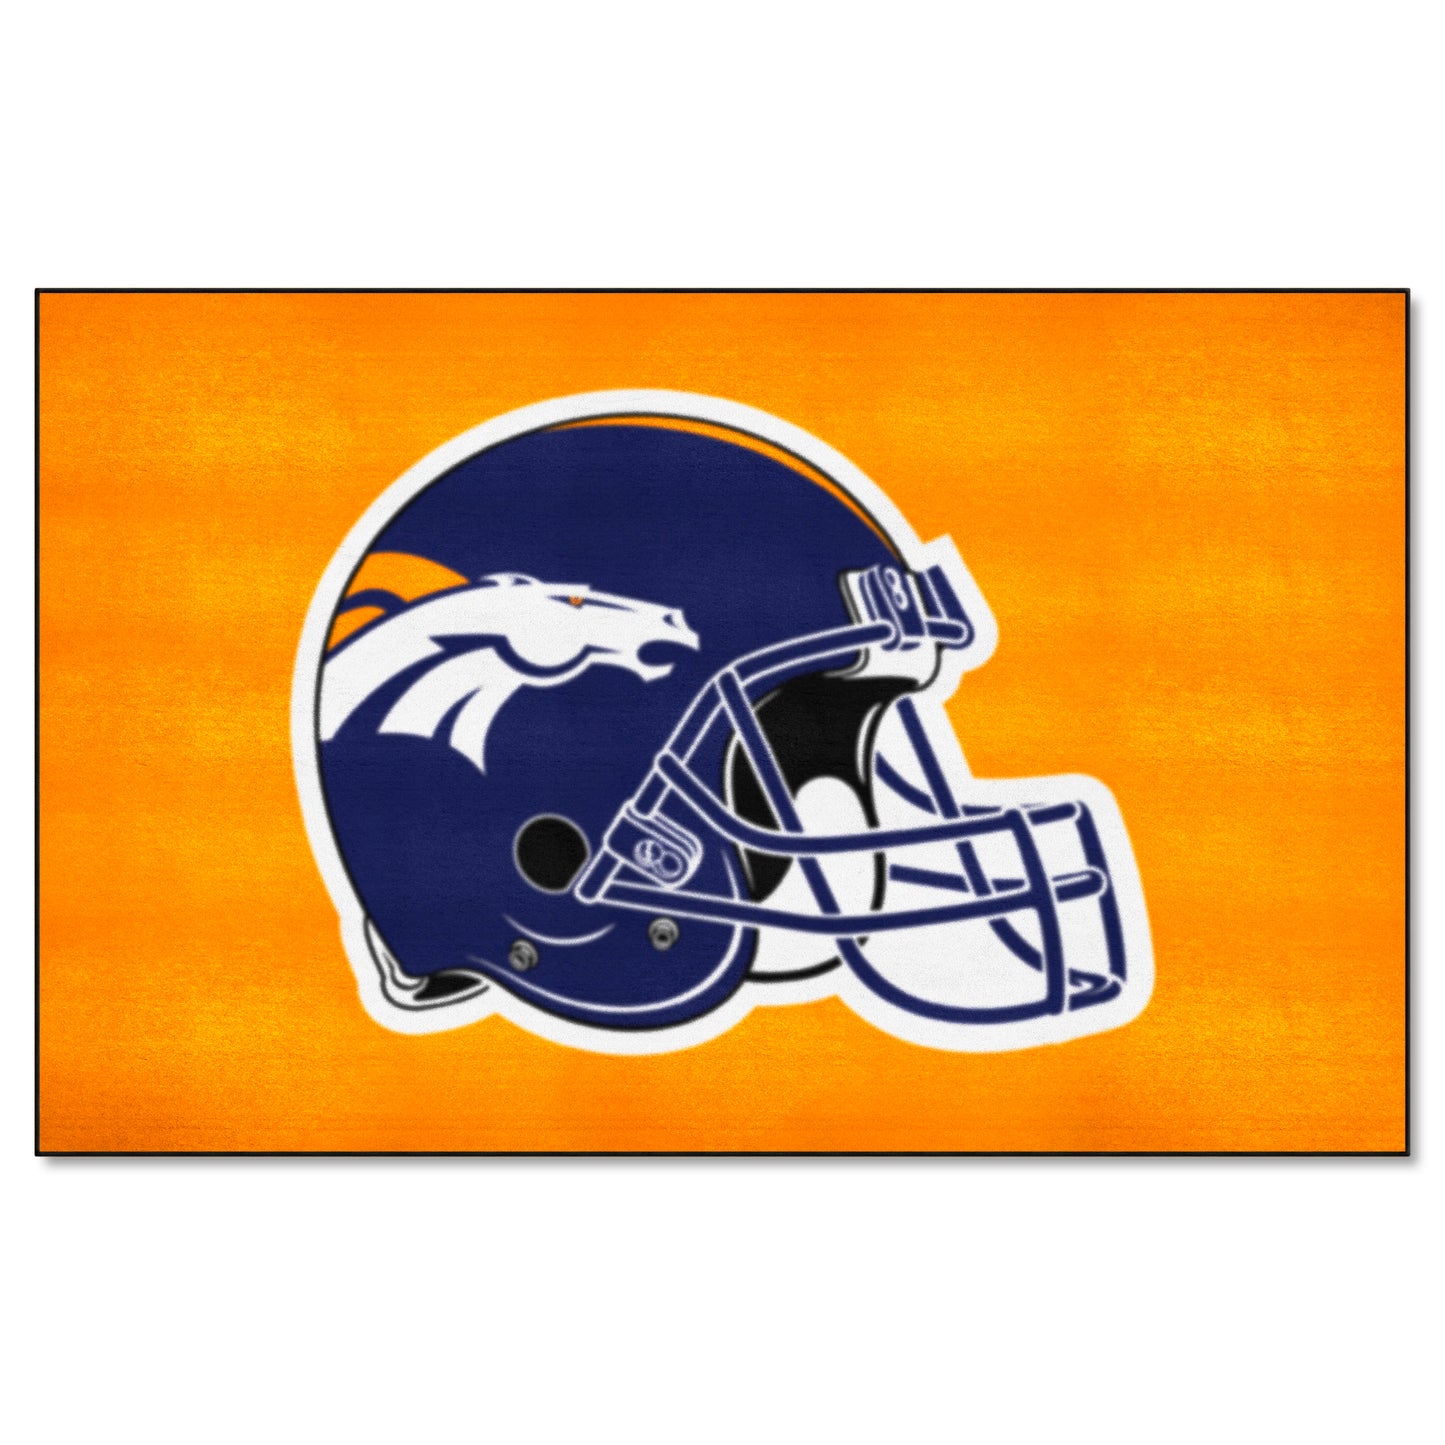 Denver Broncos Ulti-Mat Rug - 5ft. x 8ft. - Broncos Helmet Logo, Orange